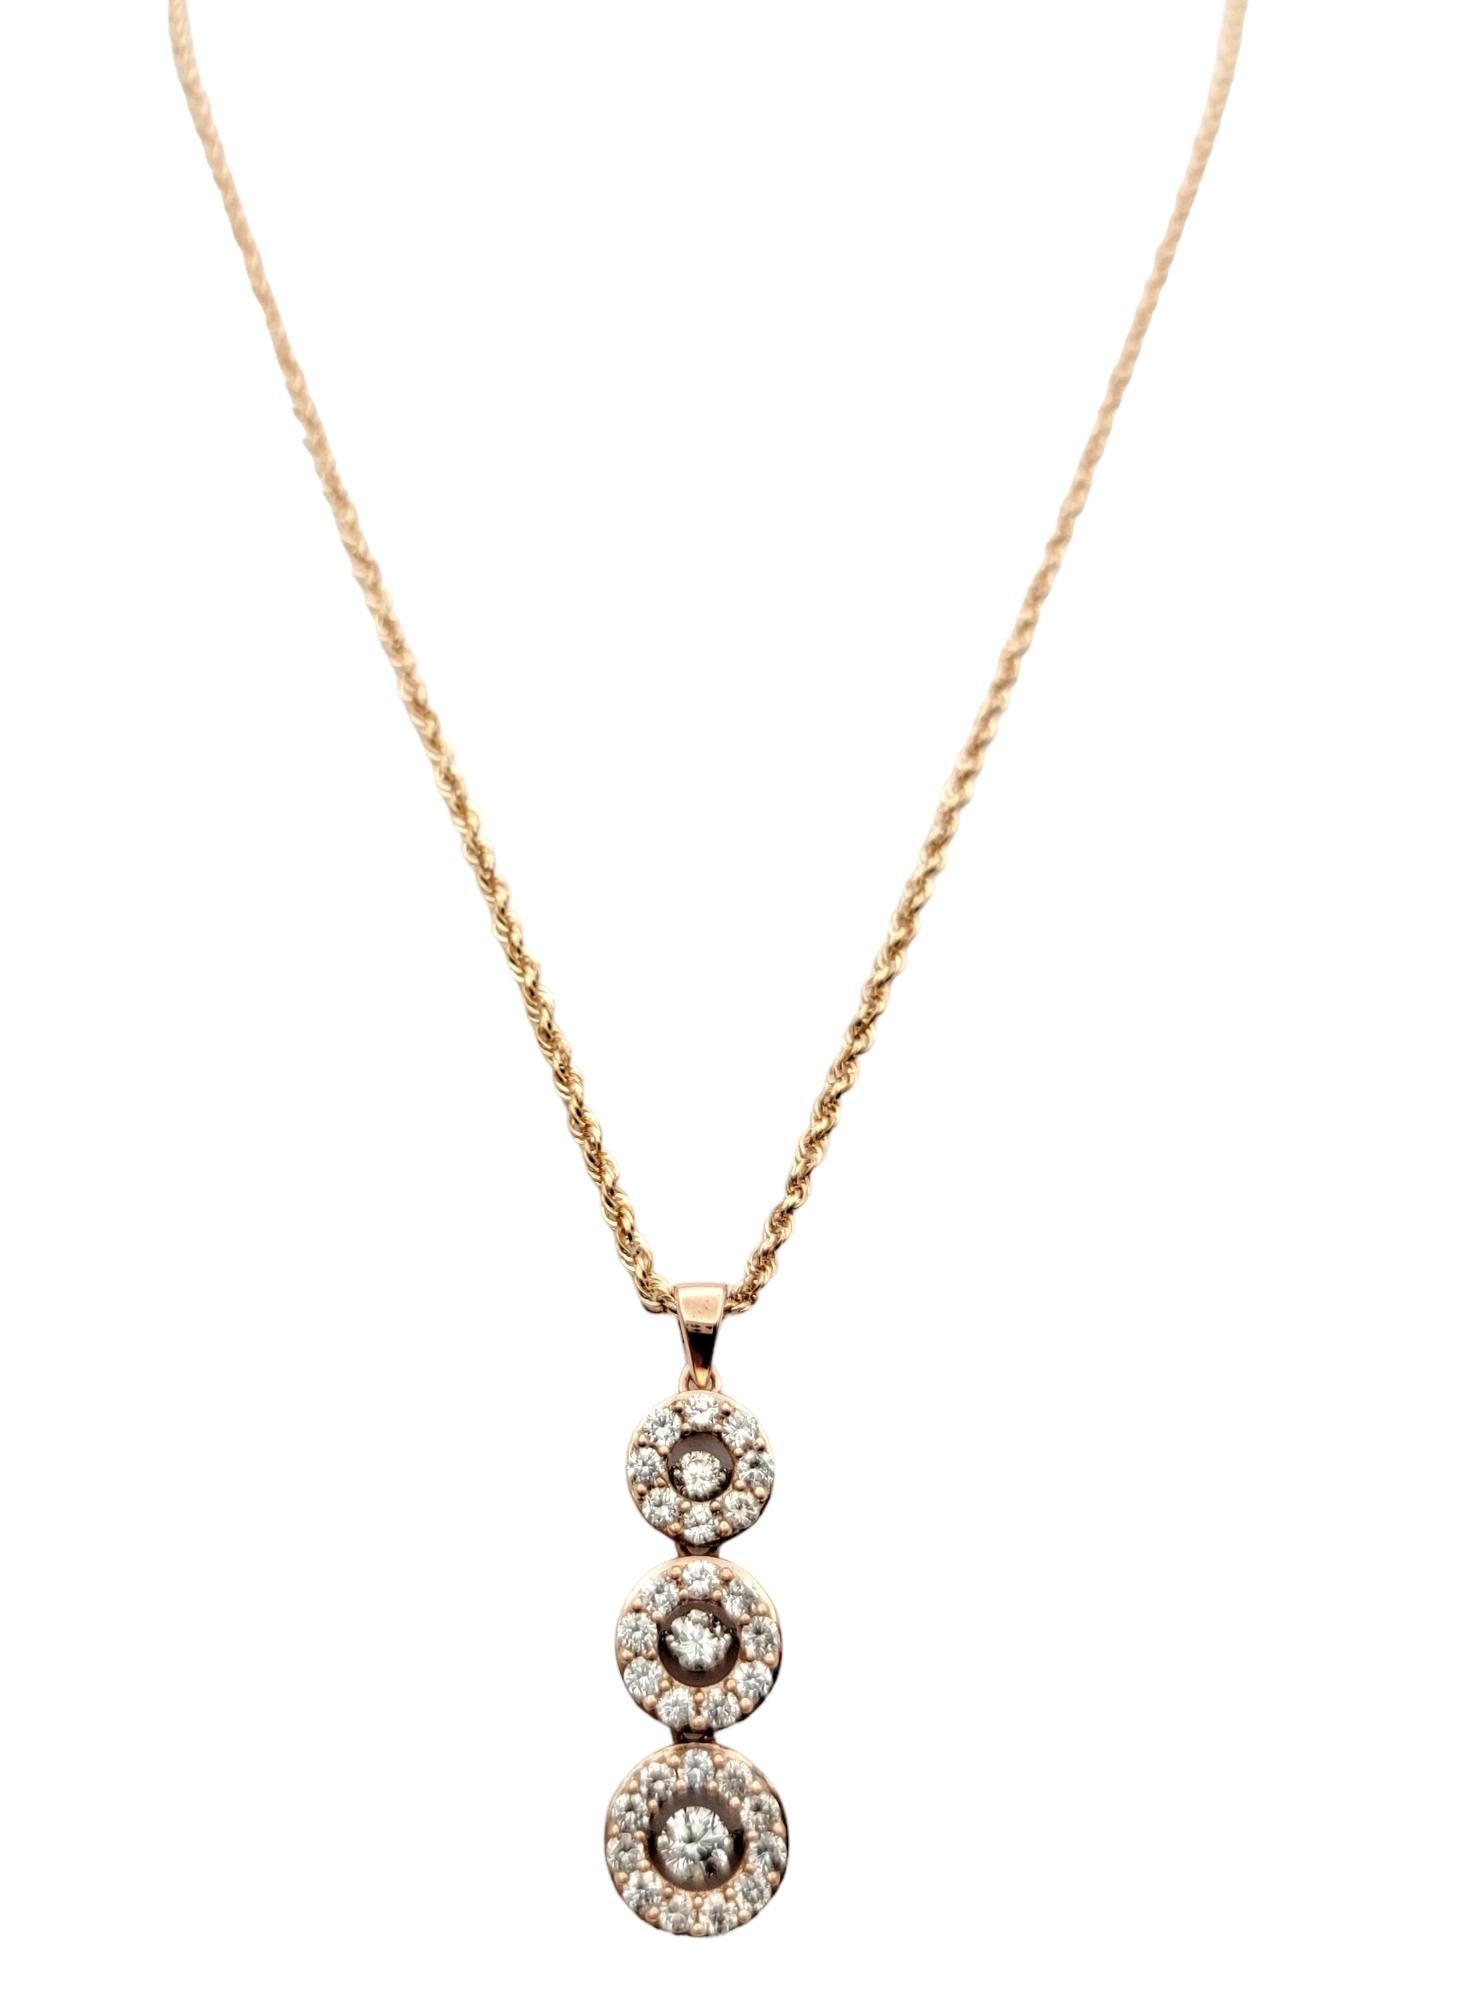 Vous adorerez ce magnifique collier pendentif en diamant contemporain.  L'or rose chaud est associé à des diamants blancs étincelants dans un design moderne chic, faisant de cette beauté scintillante l'une de vos nouvelles pièces préférées. 

Ce